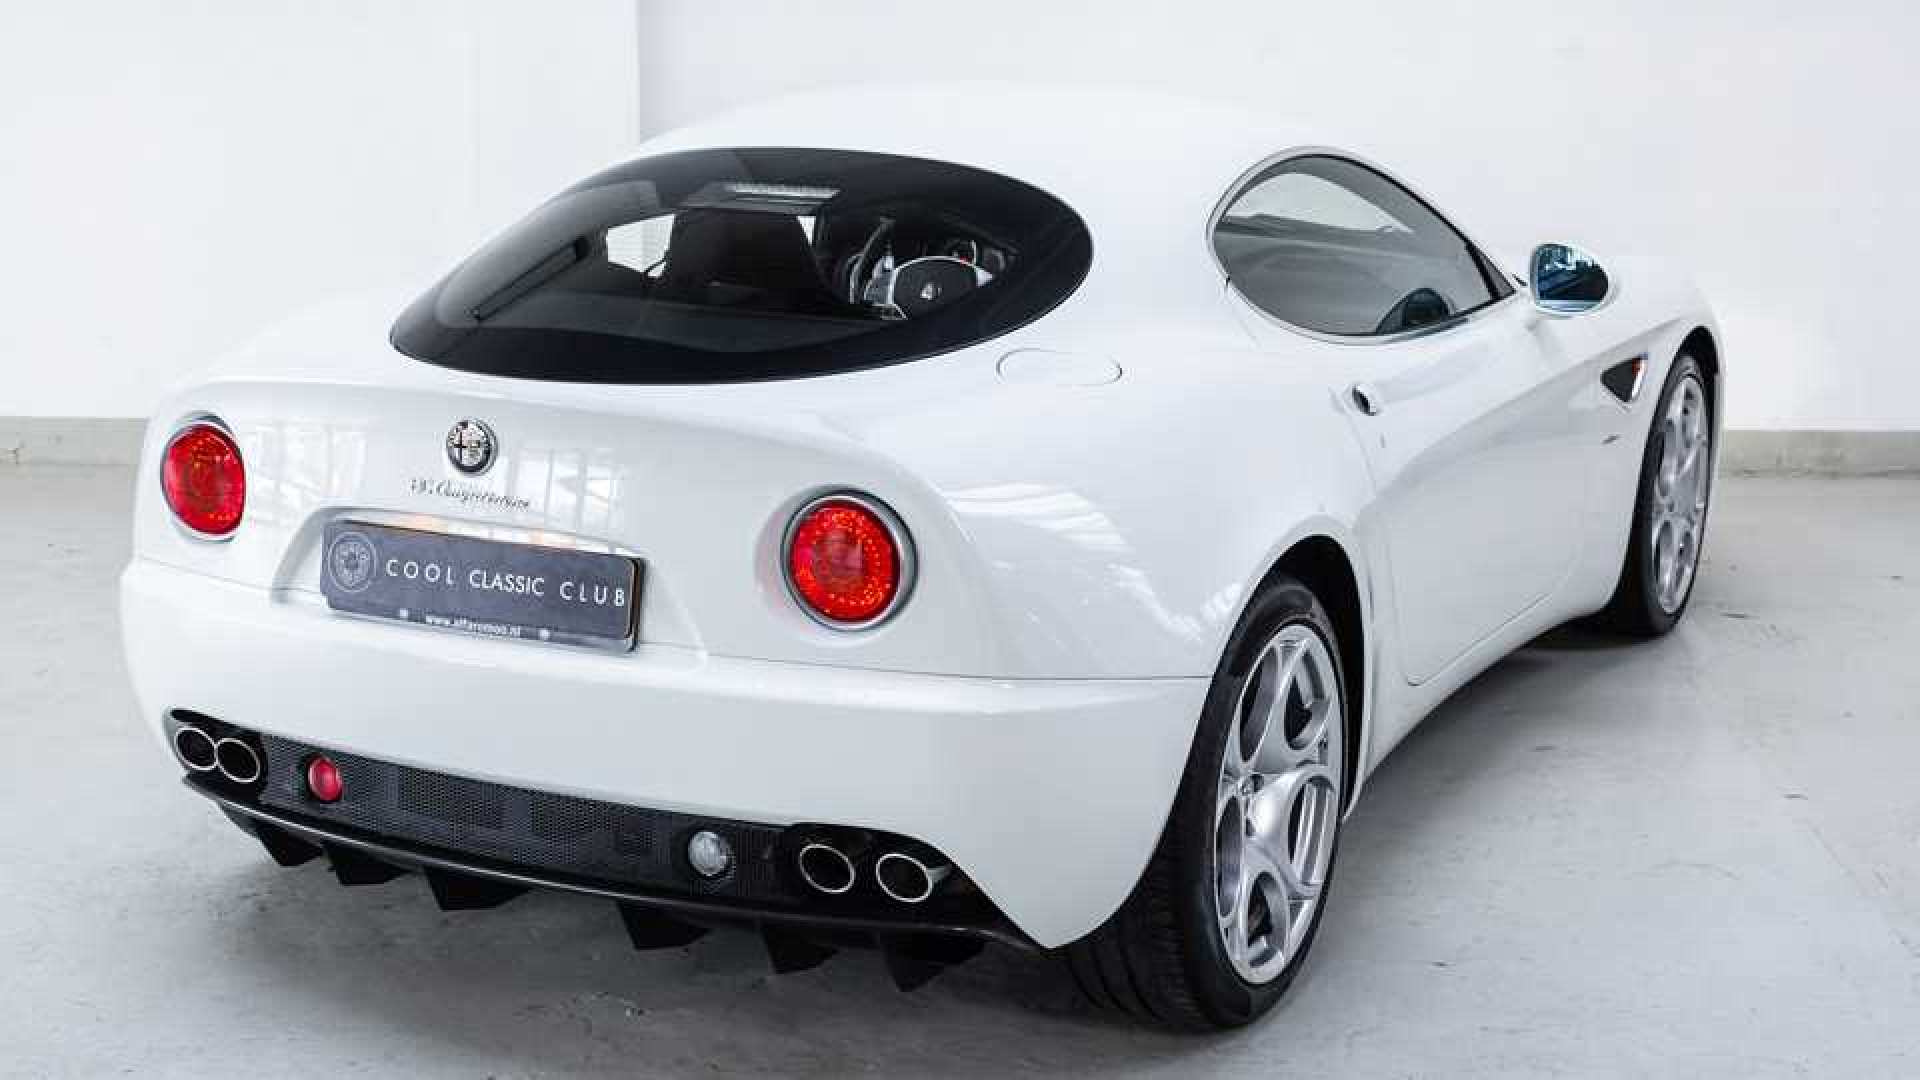 Bieden op de zeldzame Alfa Romeo van wijlen Jan des Bouvrie. Zie foto's plus alle info.